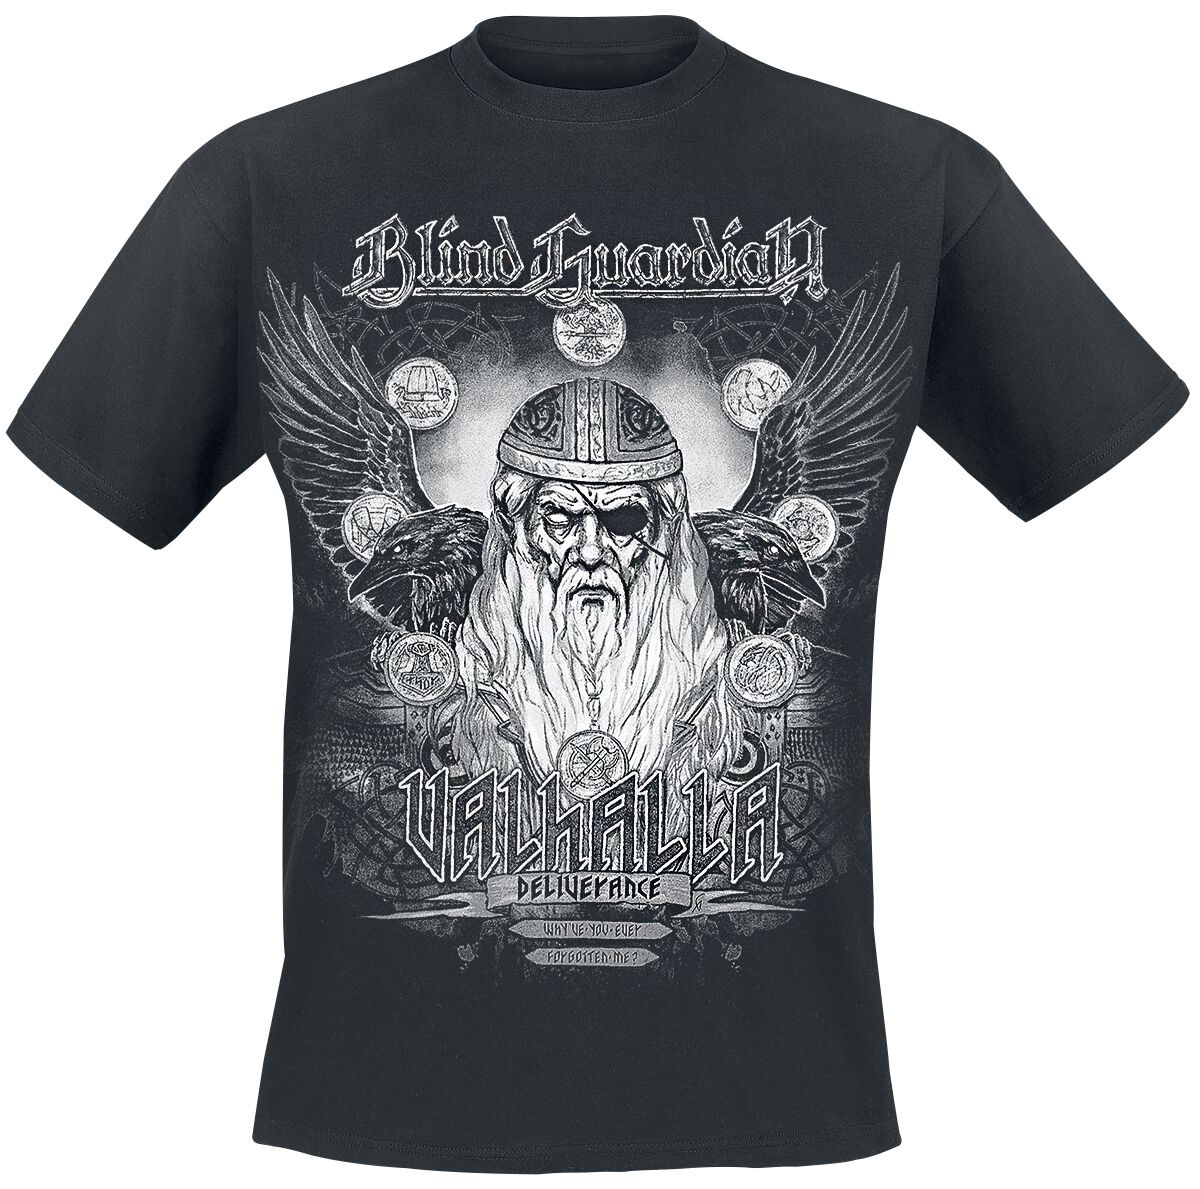 Blind Guardian T-Shirt - Valhalla - Deliverance - M bis 4XL - für Männer - Größe 4XL - schwarz  - EMP exklusives Merchandise!